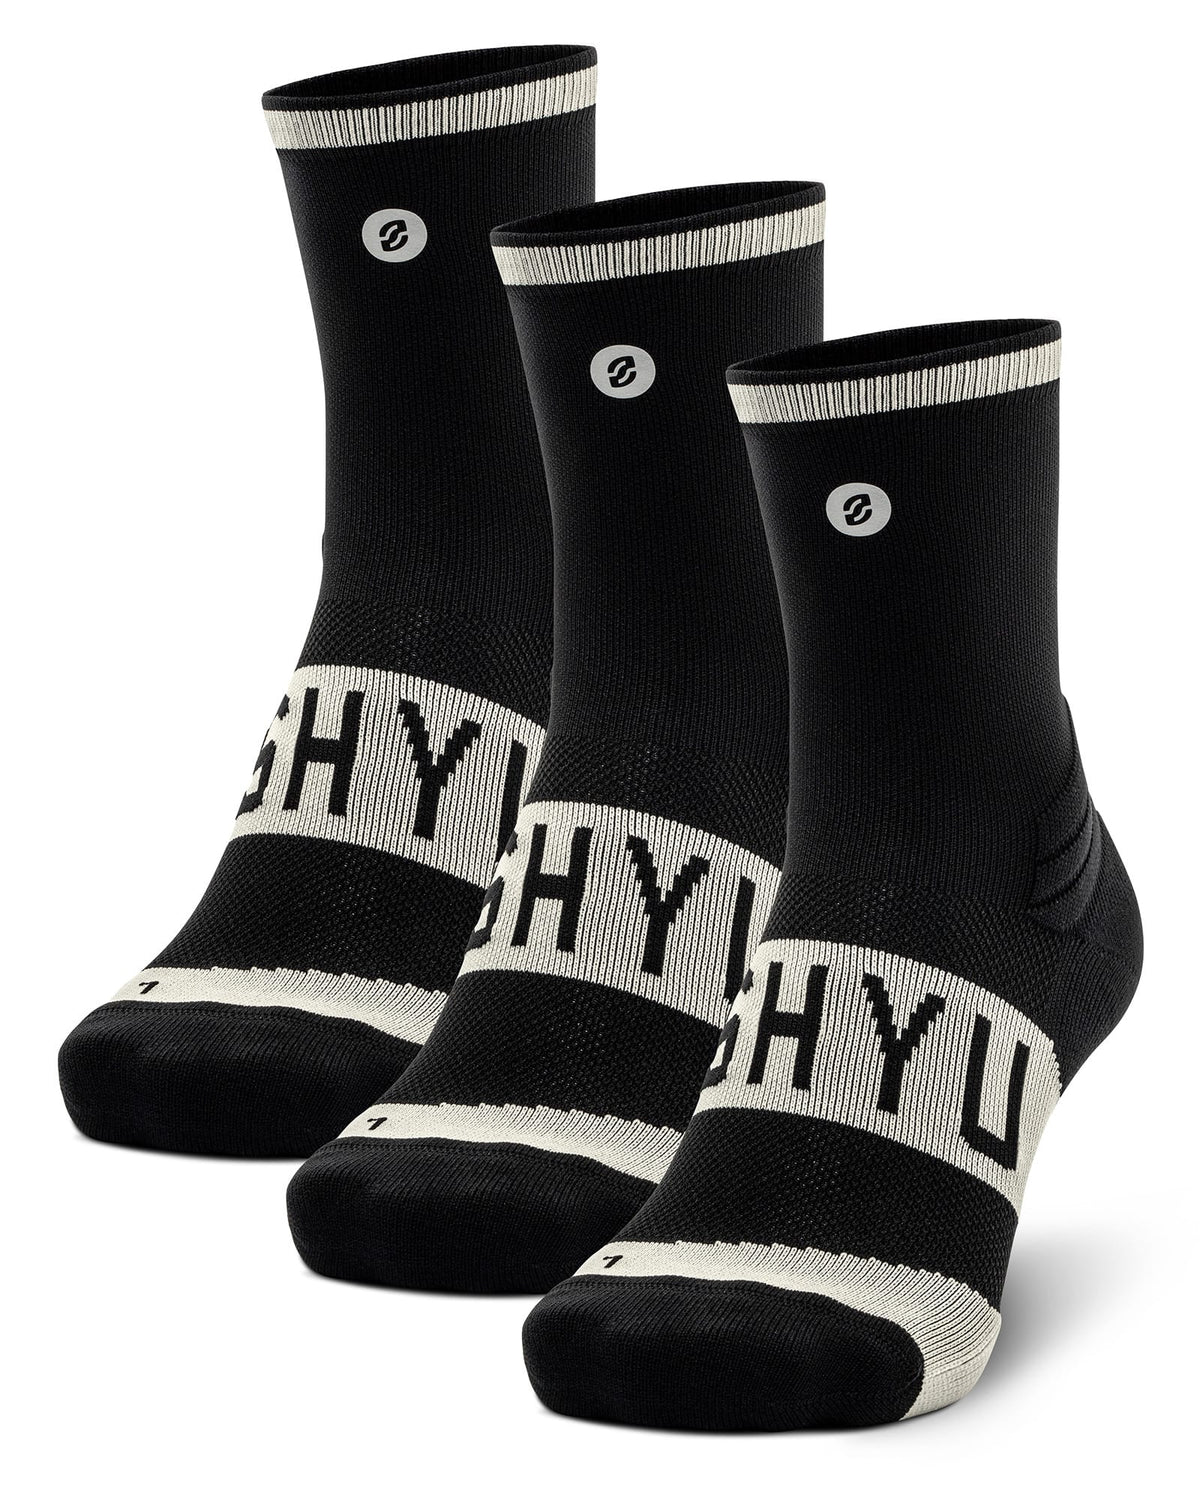 SHYU training socks - 3 pack